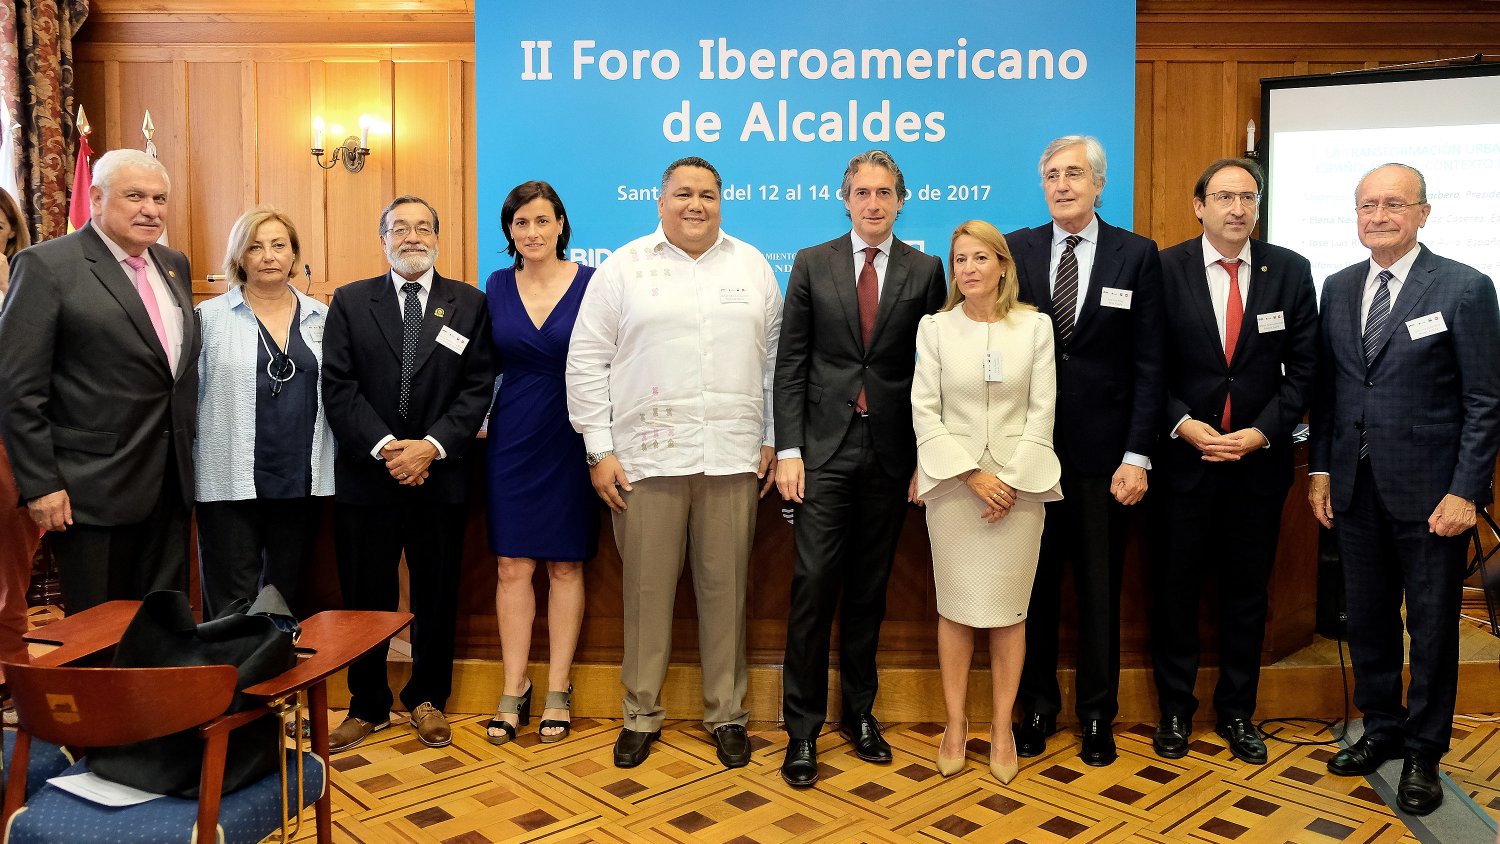 De la Torre interviene en el II Foro Iberoamericano de alcaldes que reune a los líderes locales de 14 países